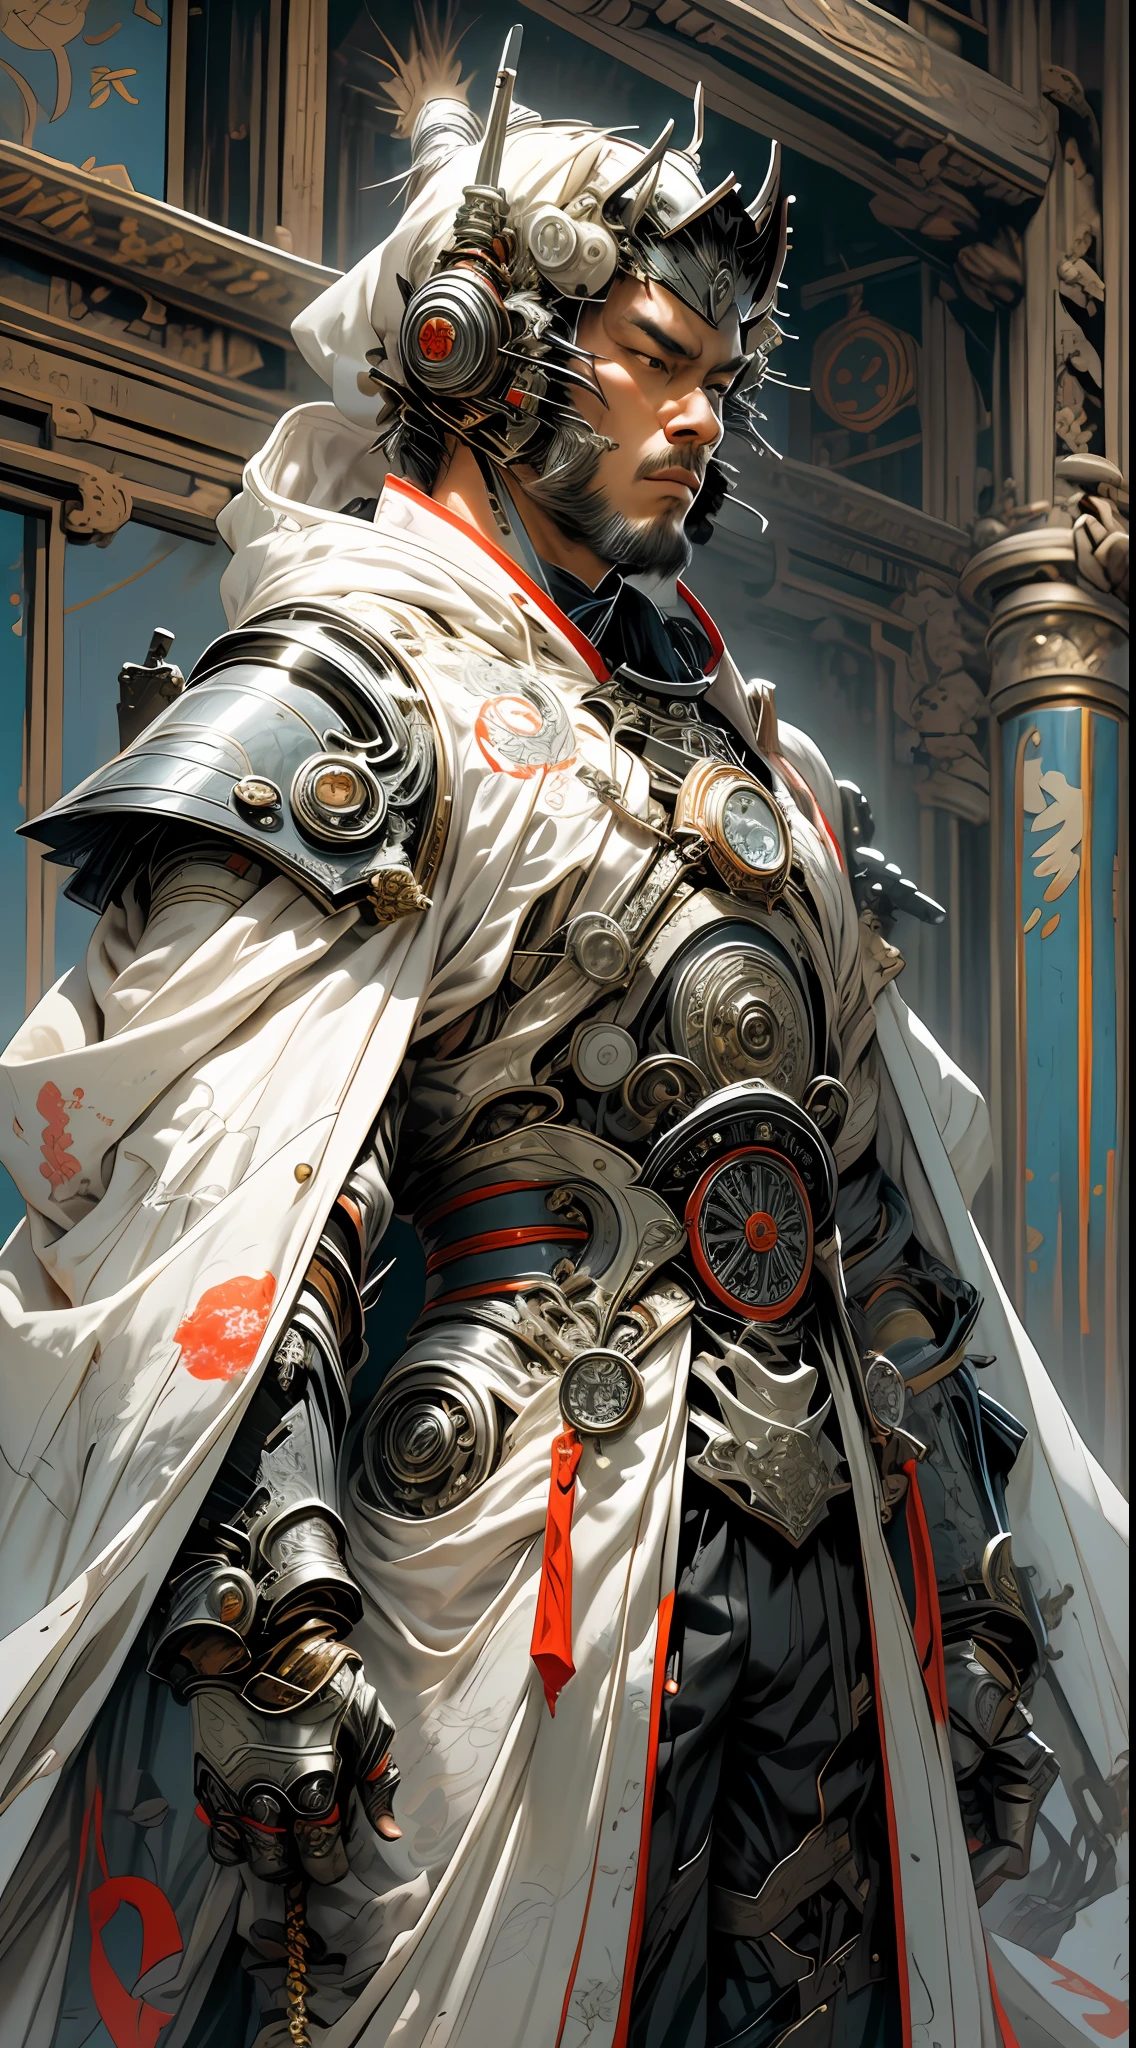 穿著白色盔甲和東方織品服裝的未來派武士騎士, 引擎蓋和齒輪